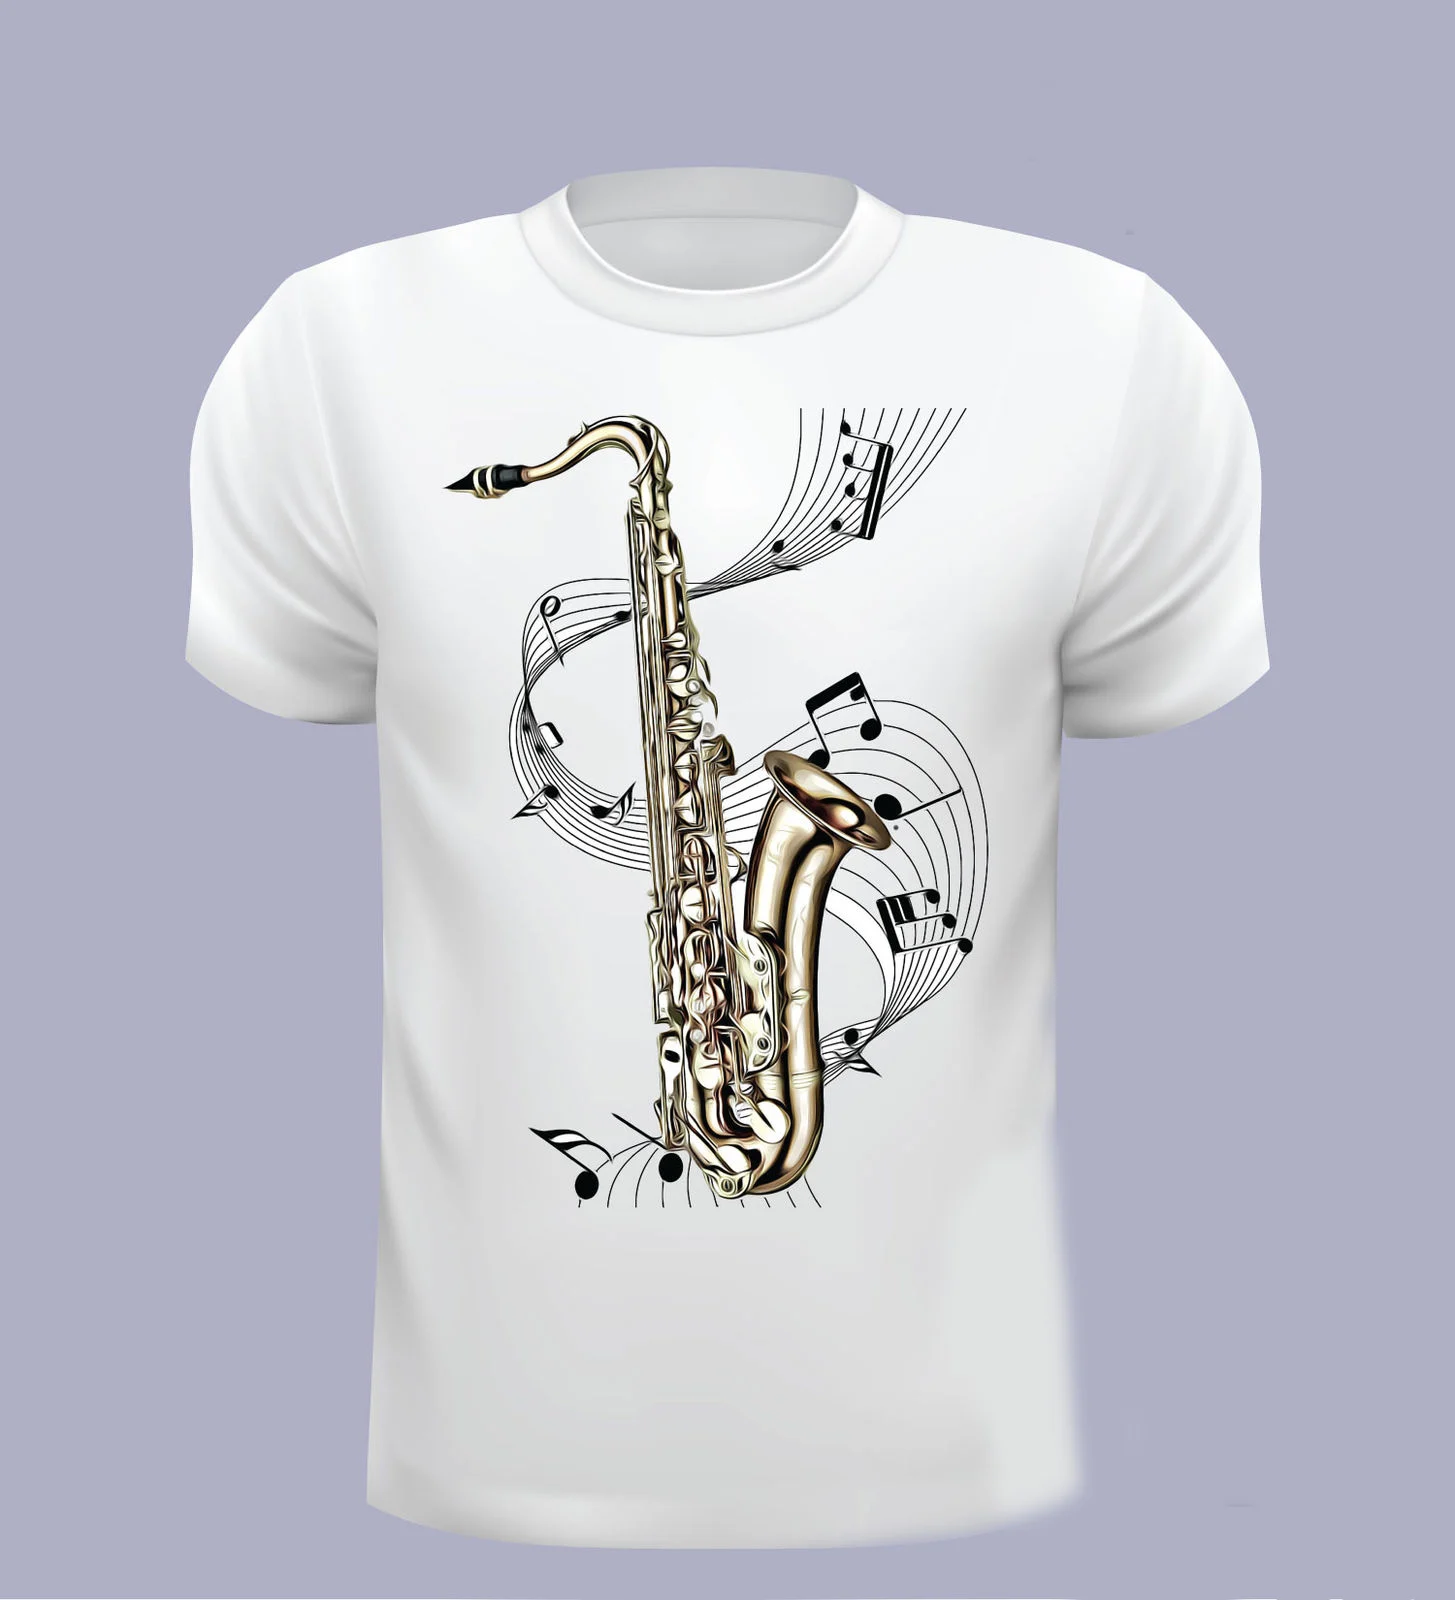 Модная футболка с коротким рукавом, саксофон, Мужская футболка, саксофон, музыка, футболка, Выберите свой размер, футболки 4XL 5XL